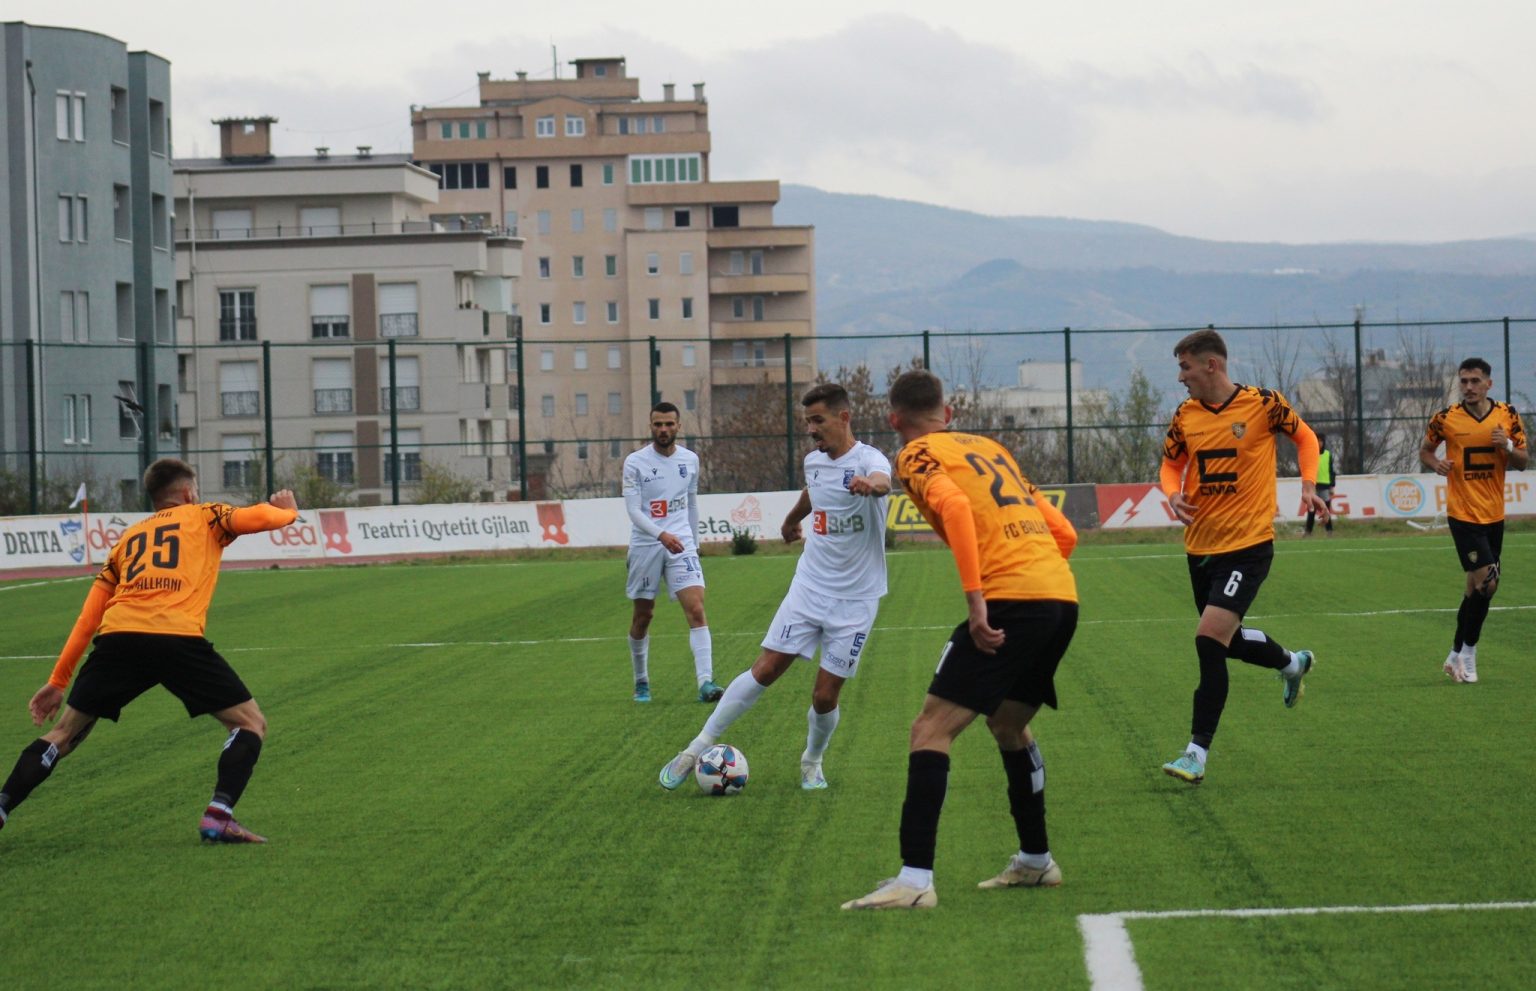 Zbulohet orari për tri xhirot e fundit, ja kur përfundon kampionati në Superligën e Kosovës në futboll